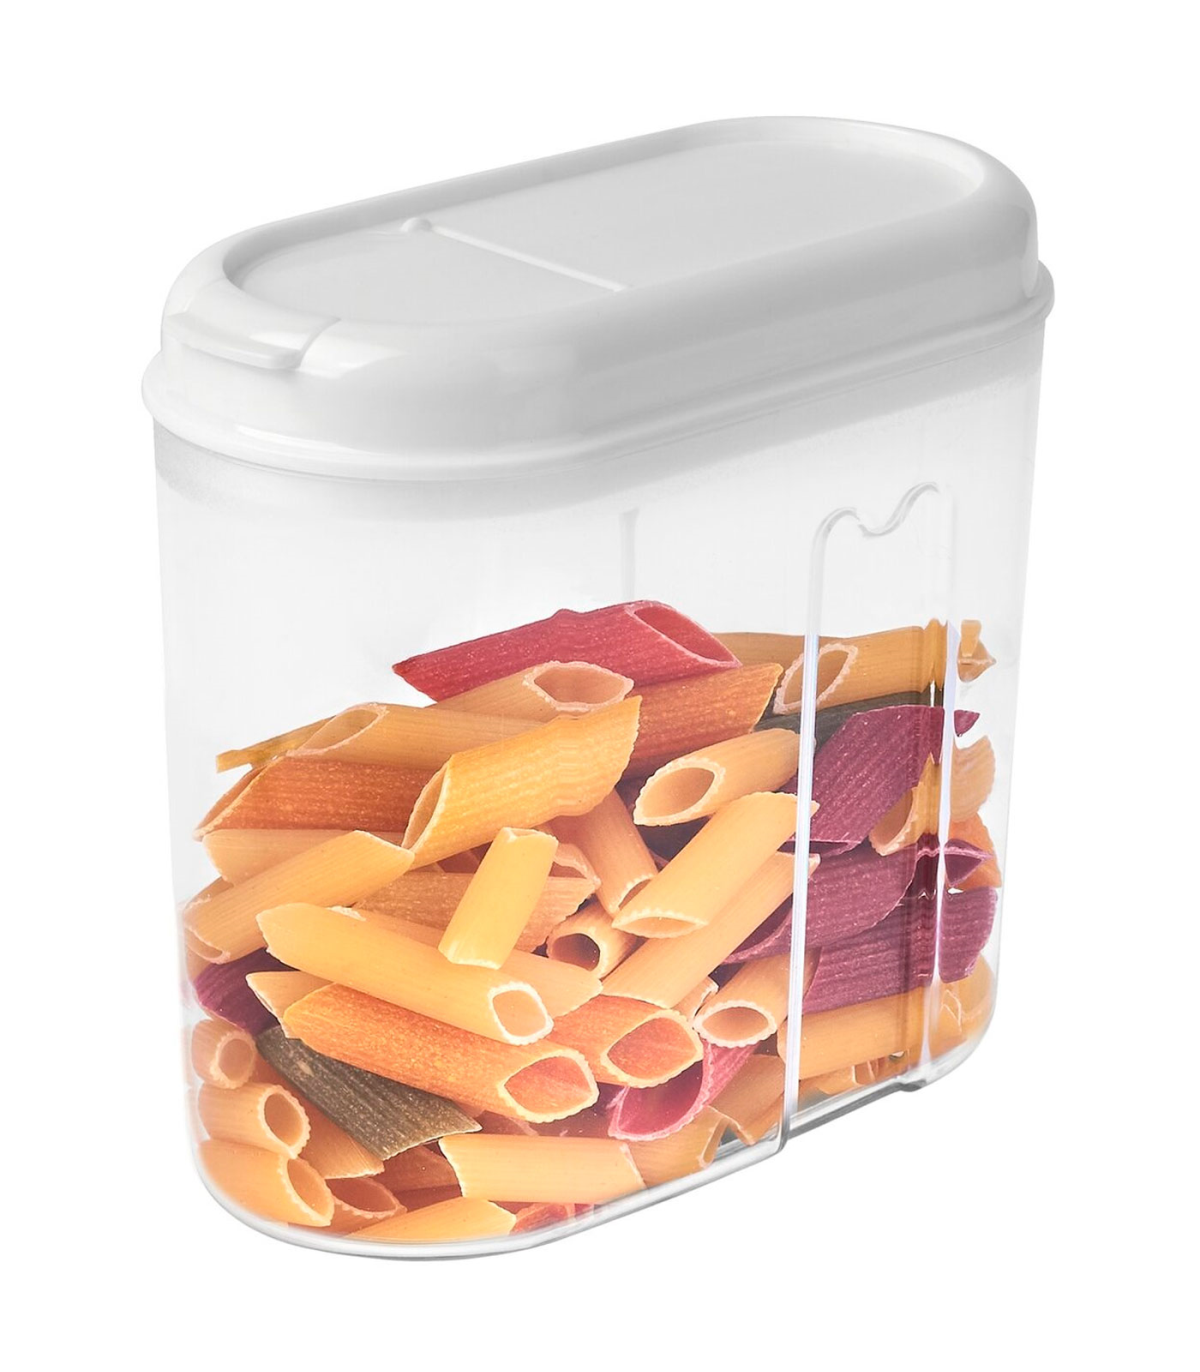 Tradineur - Recipiente reutilizable de plástico con tapa, bote de almacenaje,  pasta, legumbres, cereales, frutos secos, café, fa